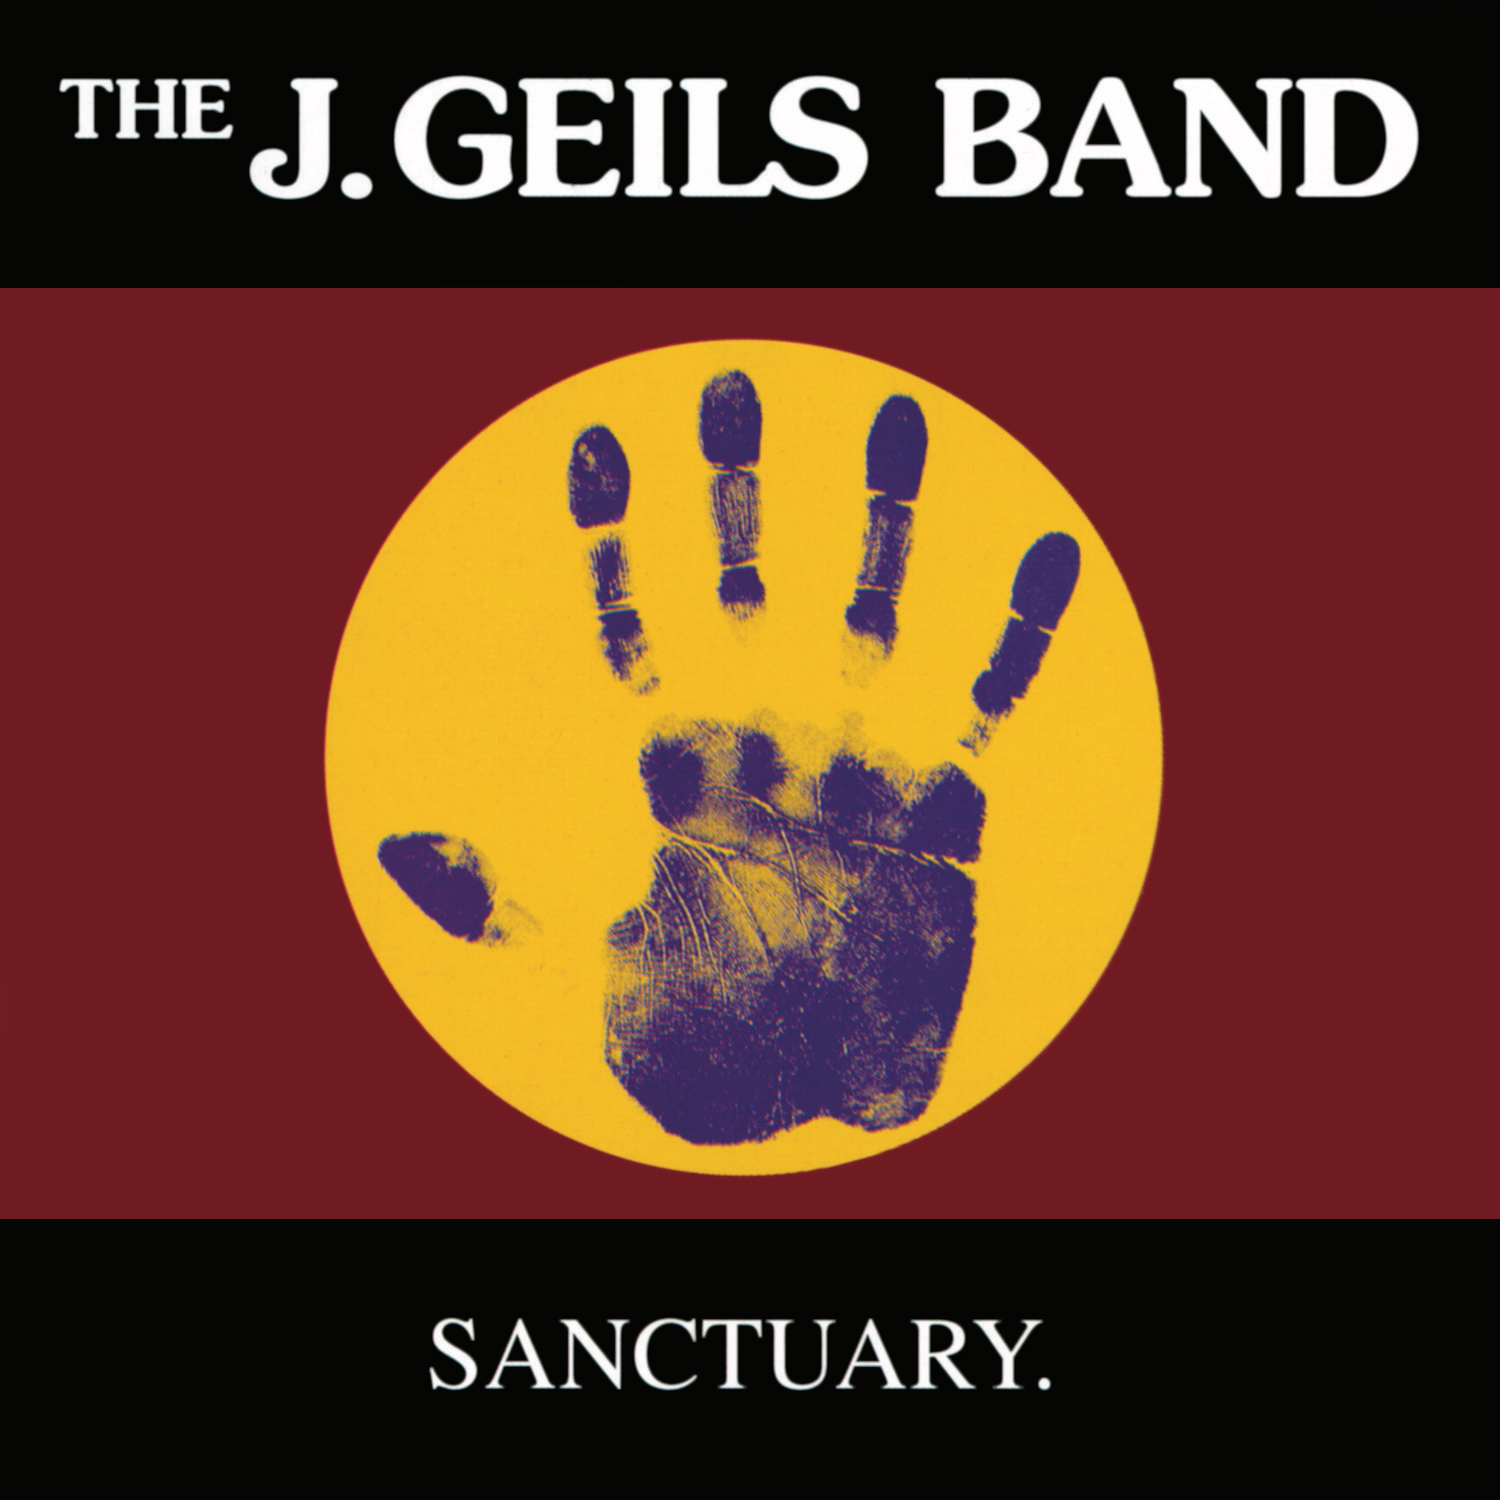 The J. Geils Band - Wild Man